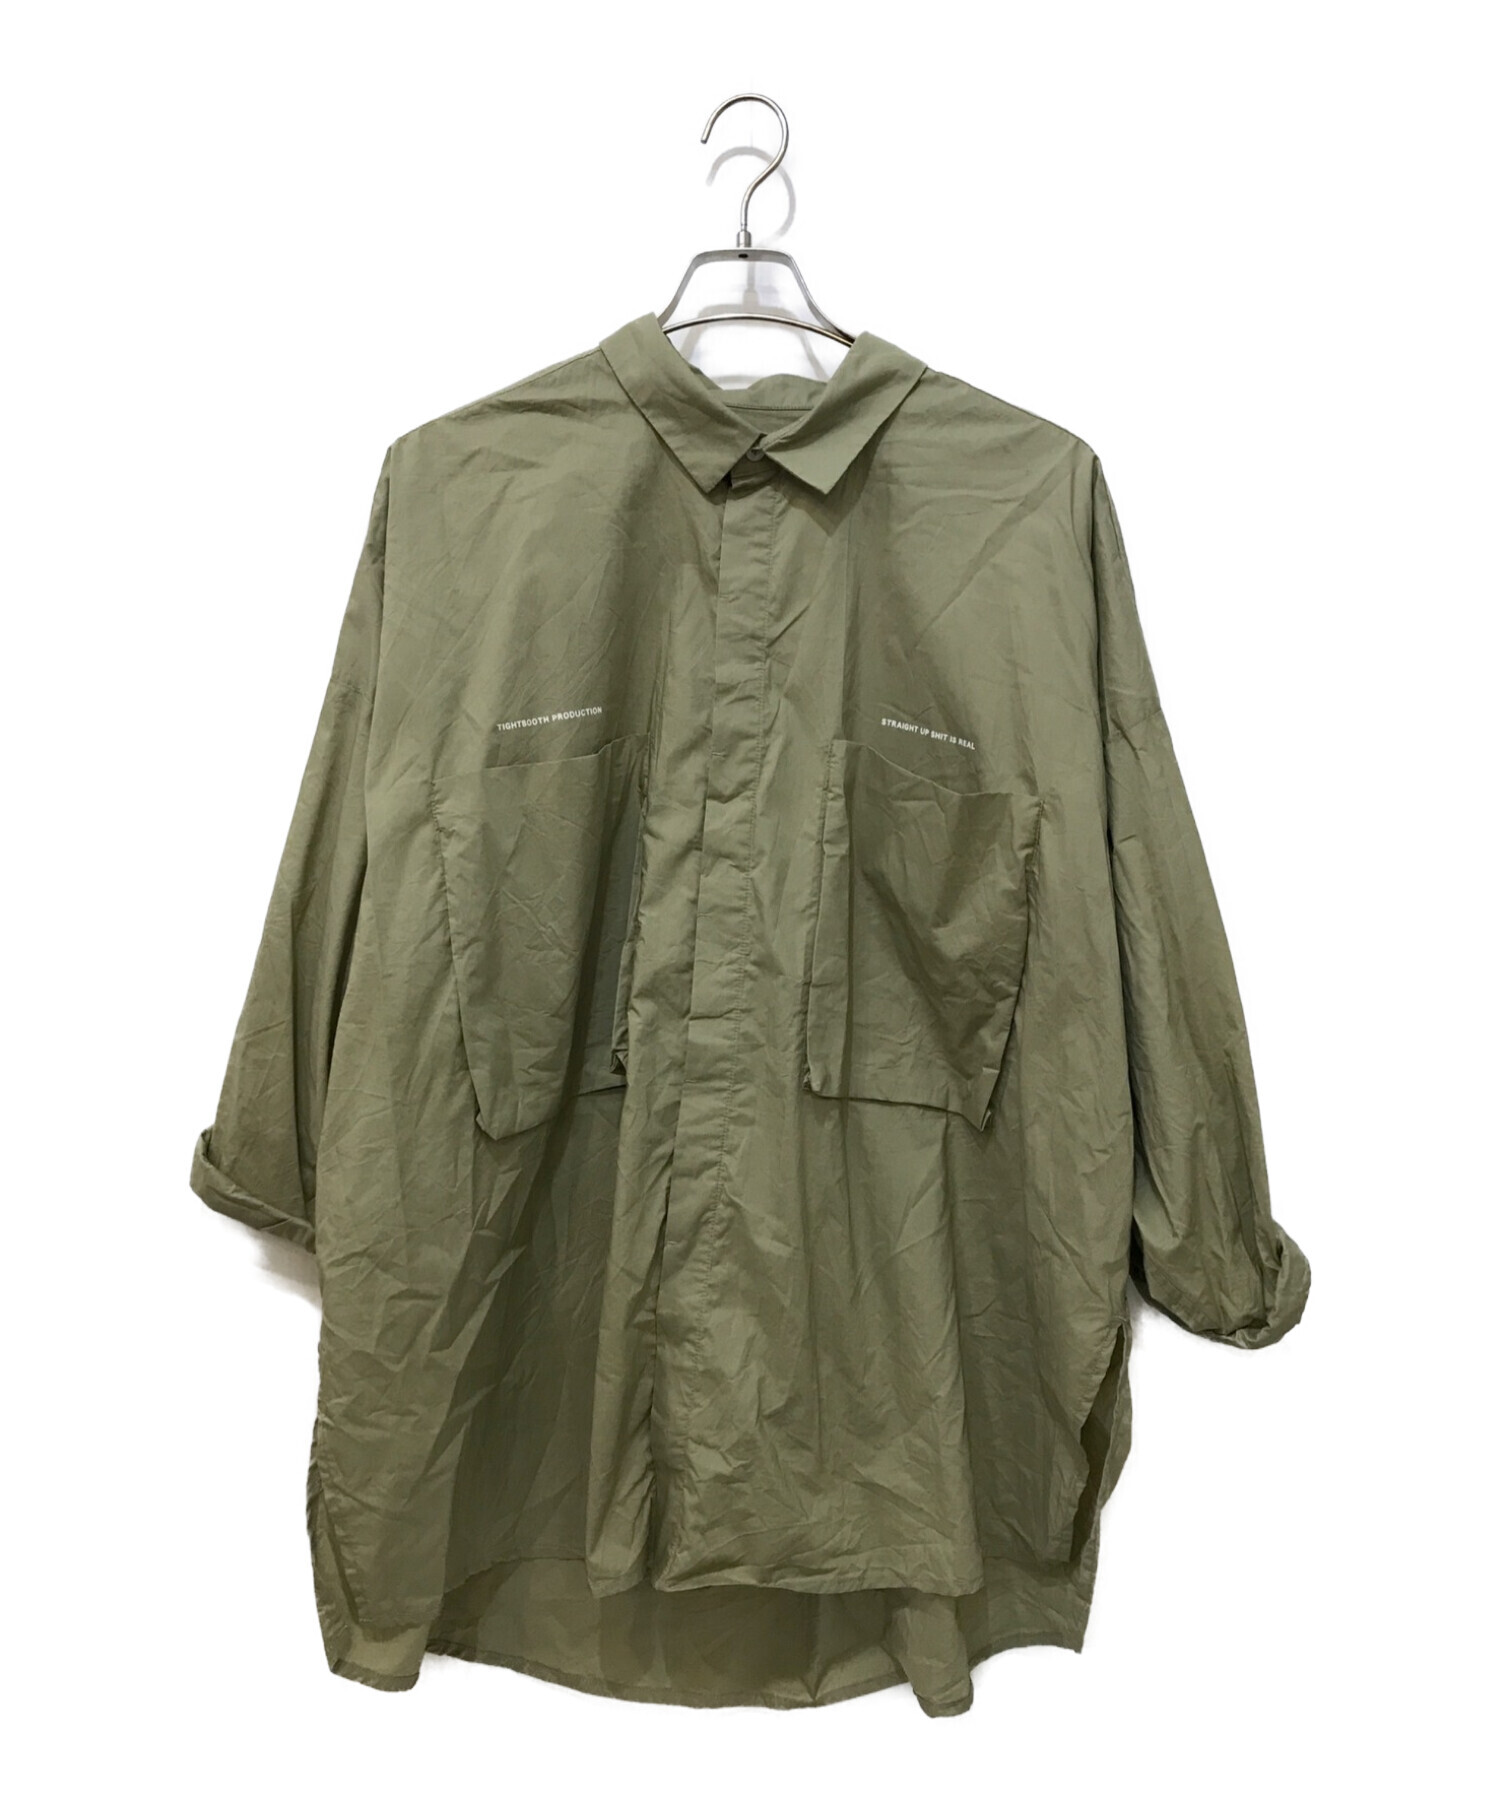 TIGHTBOOTH PRODUCTION (タイトブースプロダクション) 半袖ロールアップビッグシャツ グリーン サイズ:L